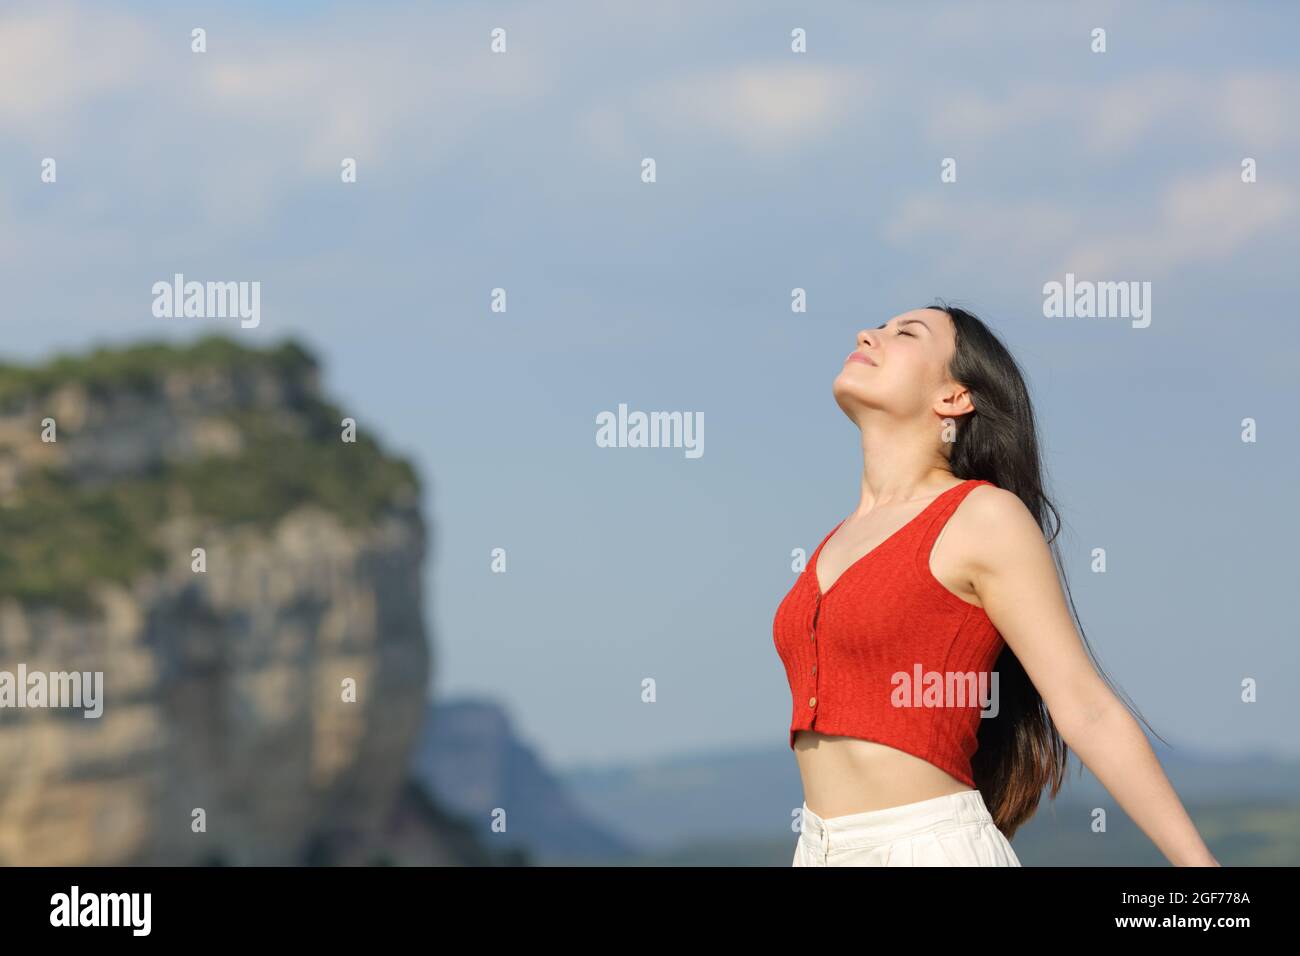 Mischrasse Frau in rot atmen frische Luft im Berg stehen Stockfoto